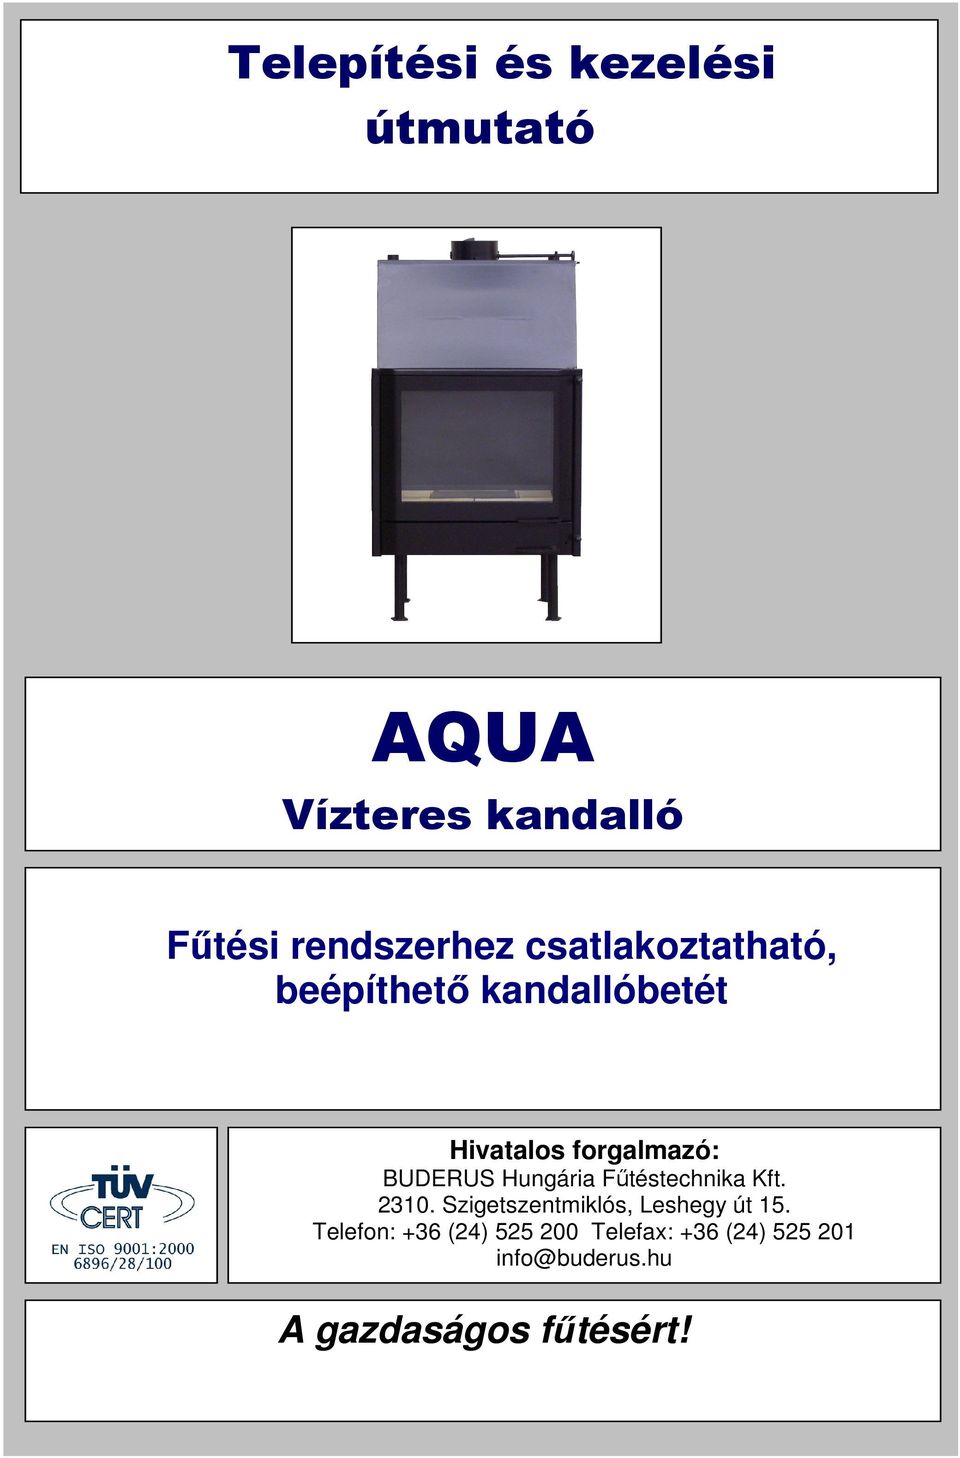 AQUA. Telepítési és kezelési útmutató. Vízteres kandalló. Fűtési  rendszerhez csatlakoztatható, beépíthető kandallóbetét. A gazdaságos  fűtésért! - PDF Ingyenes letöltés